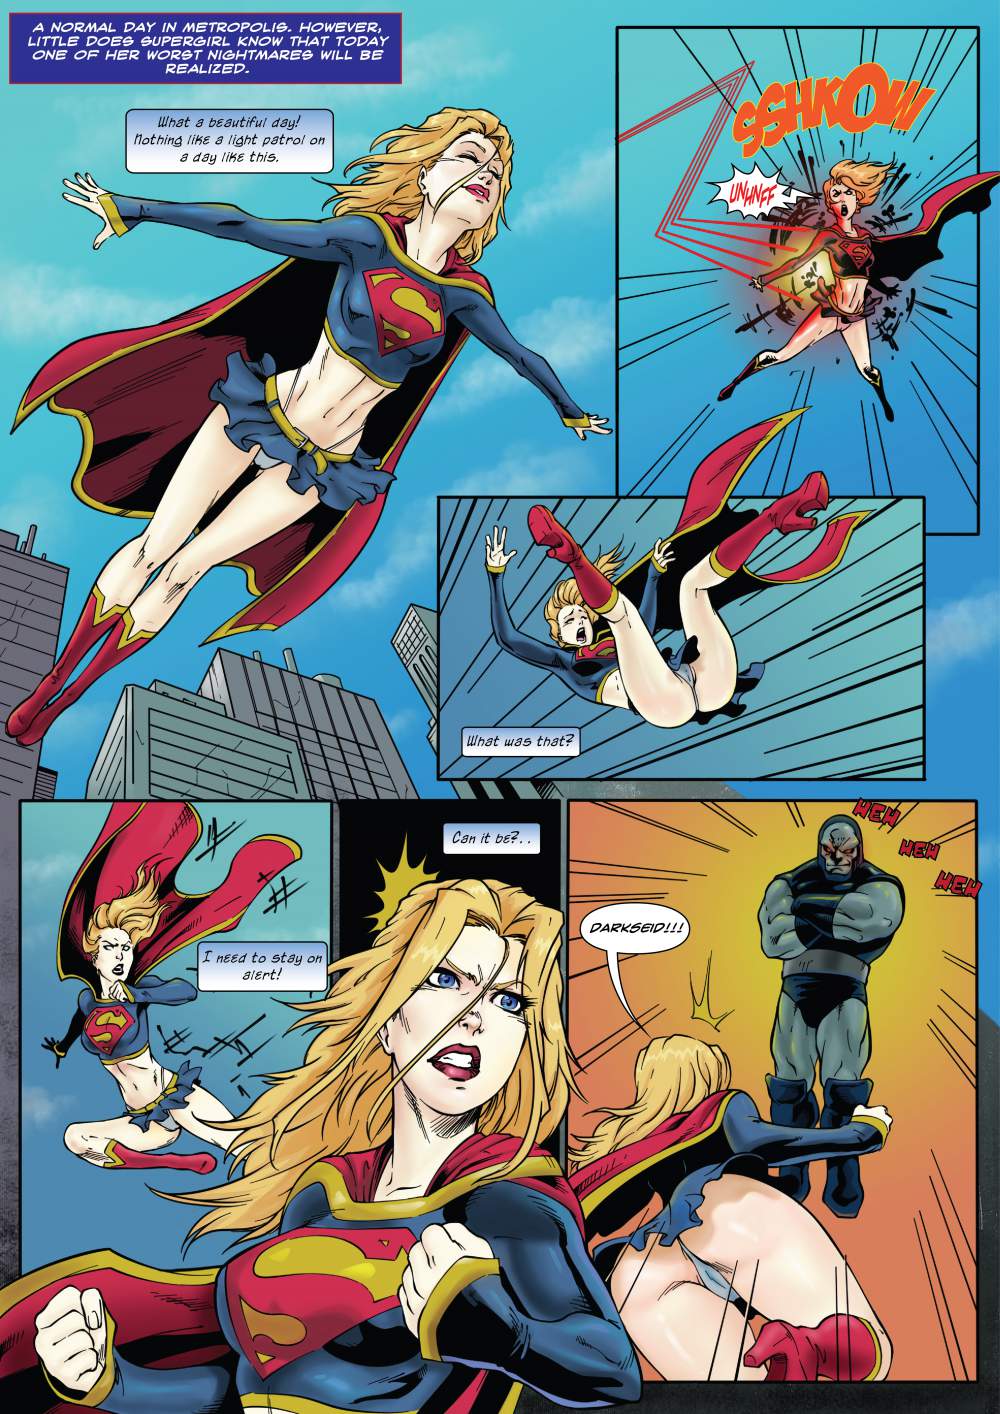 Supergirl Cartoon Blowjob Porn - Supergirl's Last Stand (Superman) - Porn Cartoon Comics